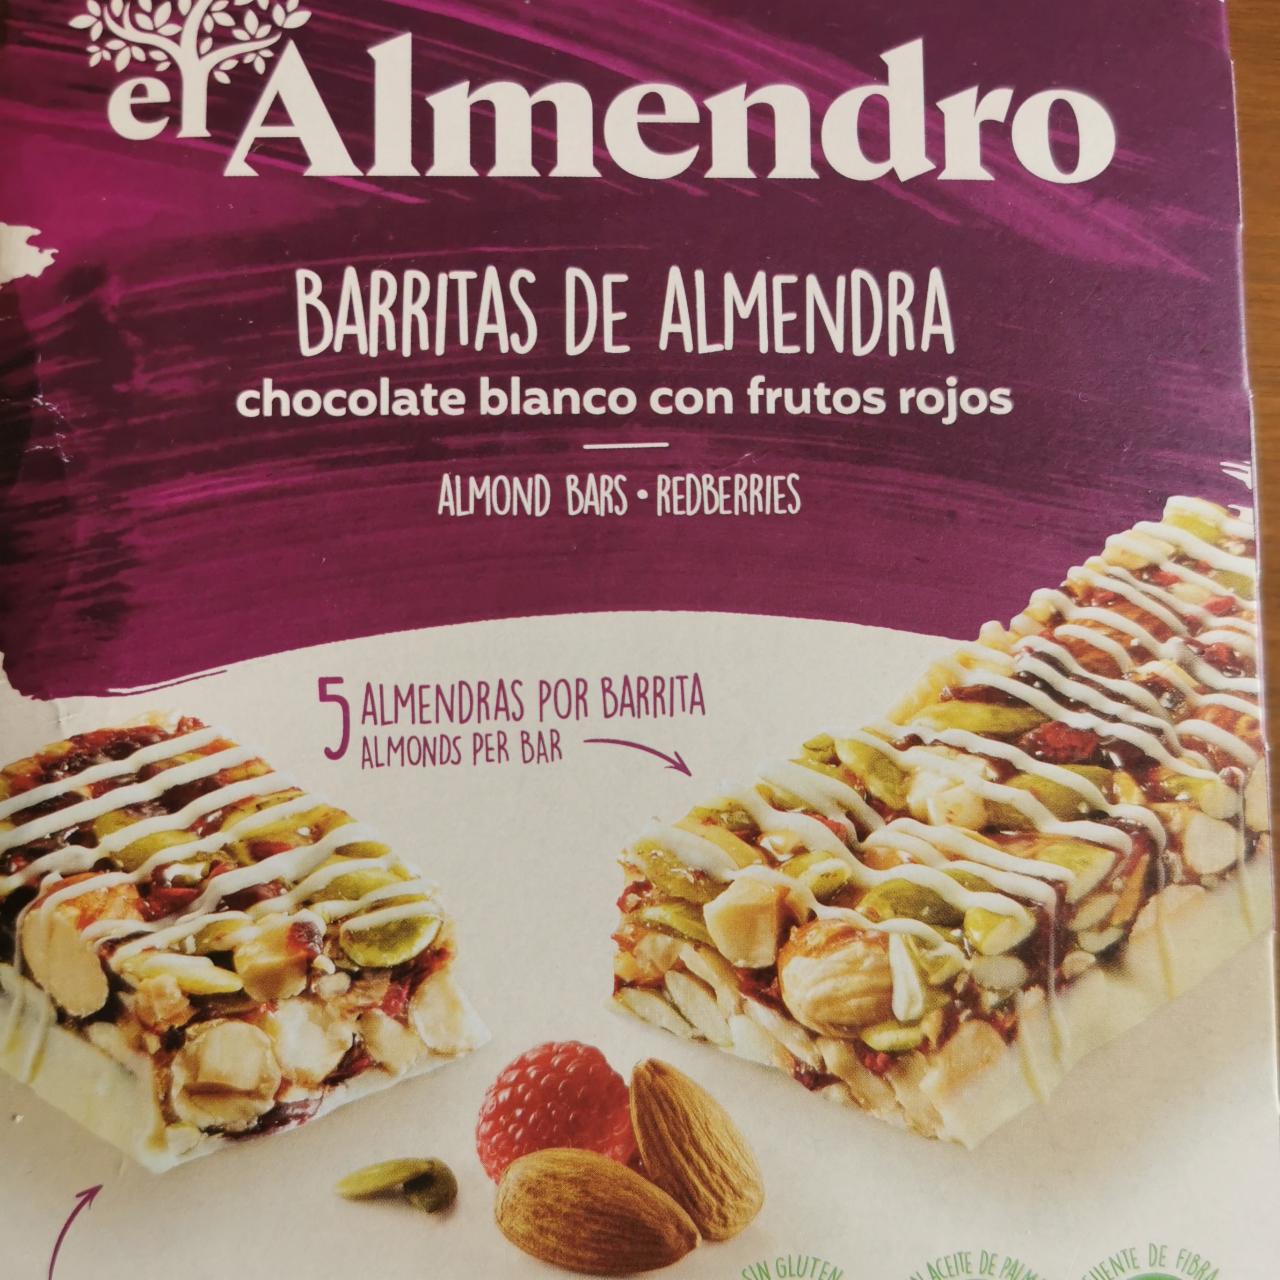 Fotografie - Barritas de almendra chocolate blanco con frutos rojos Almendro